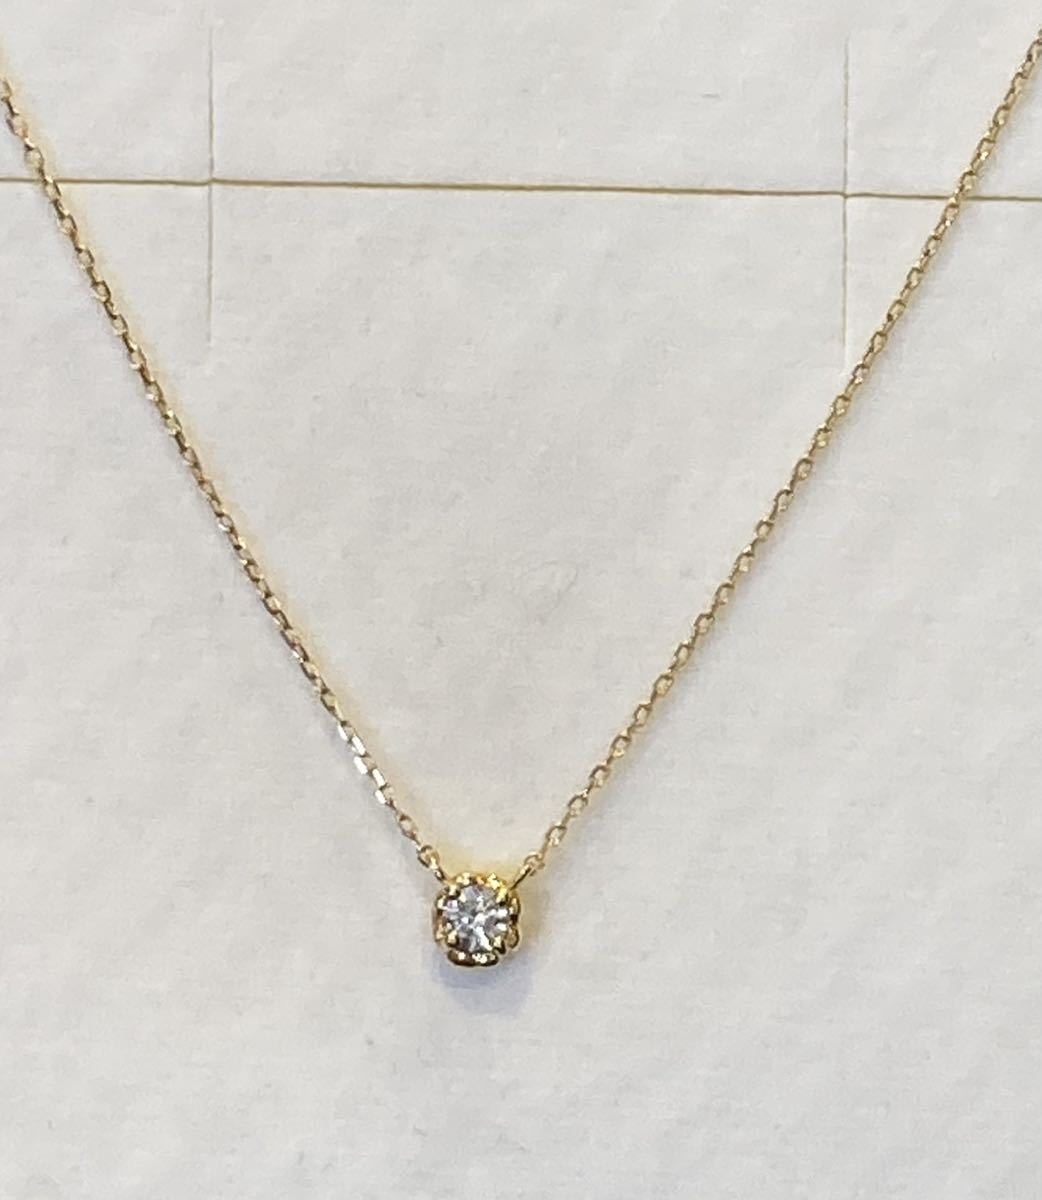 新品 正規品 AHKAH アーカー ネックレス k18 ダイヤモンド ティアネックレス 箱 紙袋 リボン プレゼント ダイヤ プレゼント ダイアモンド